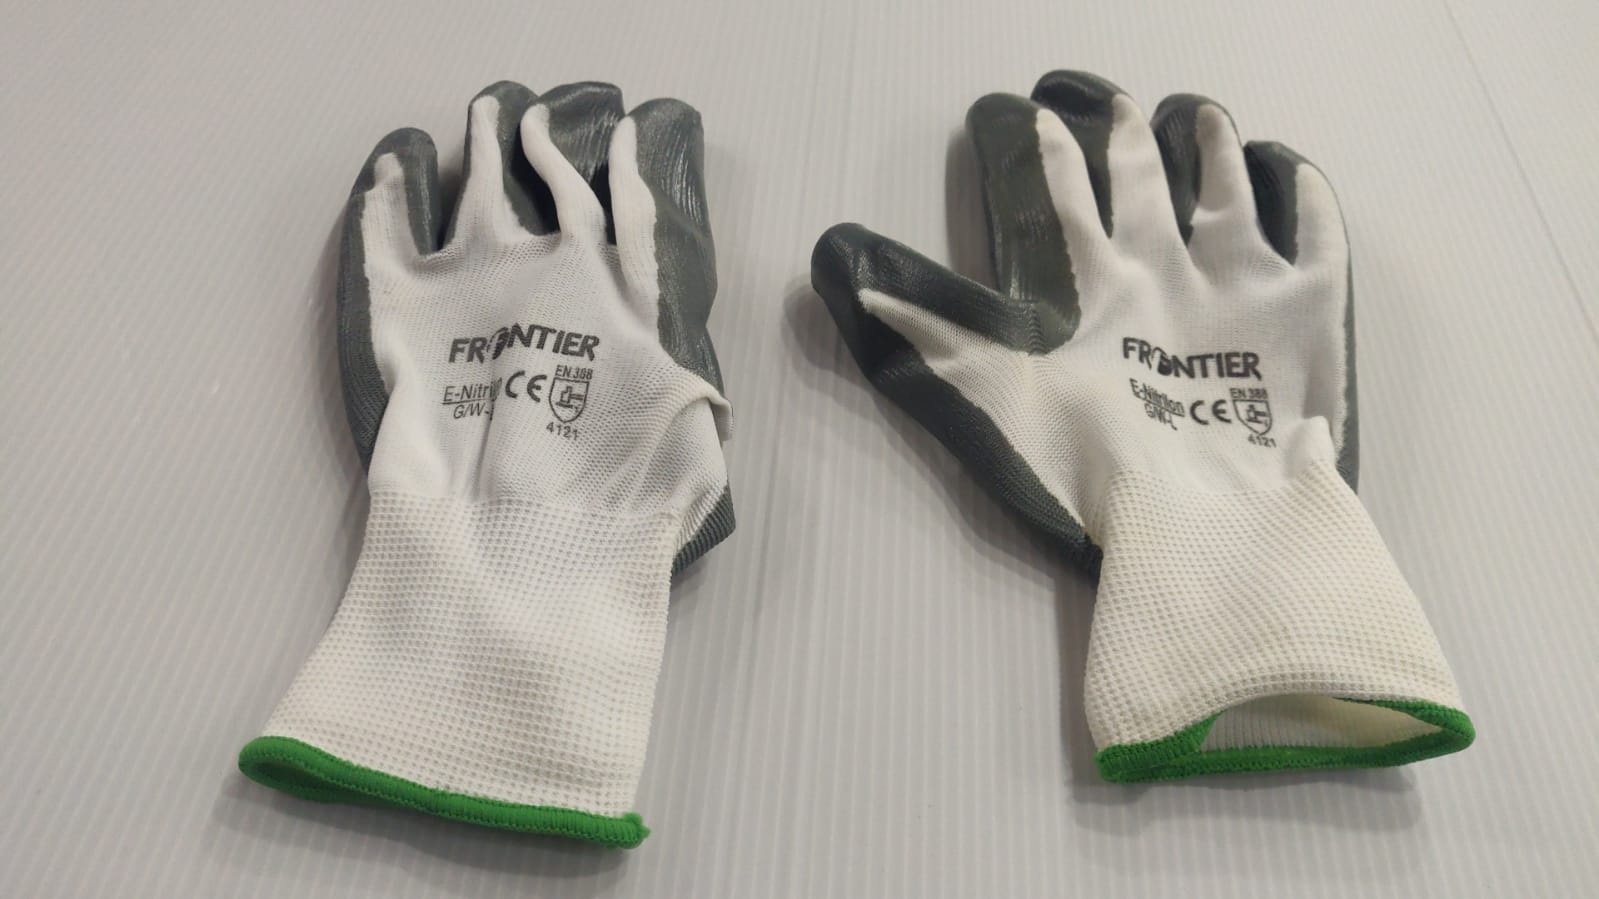 Hand Gloves 1 Pair